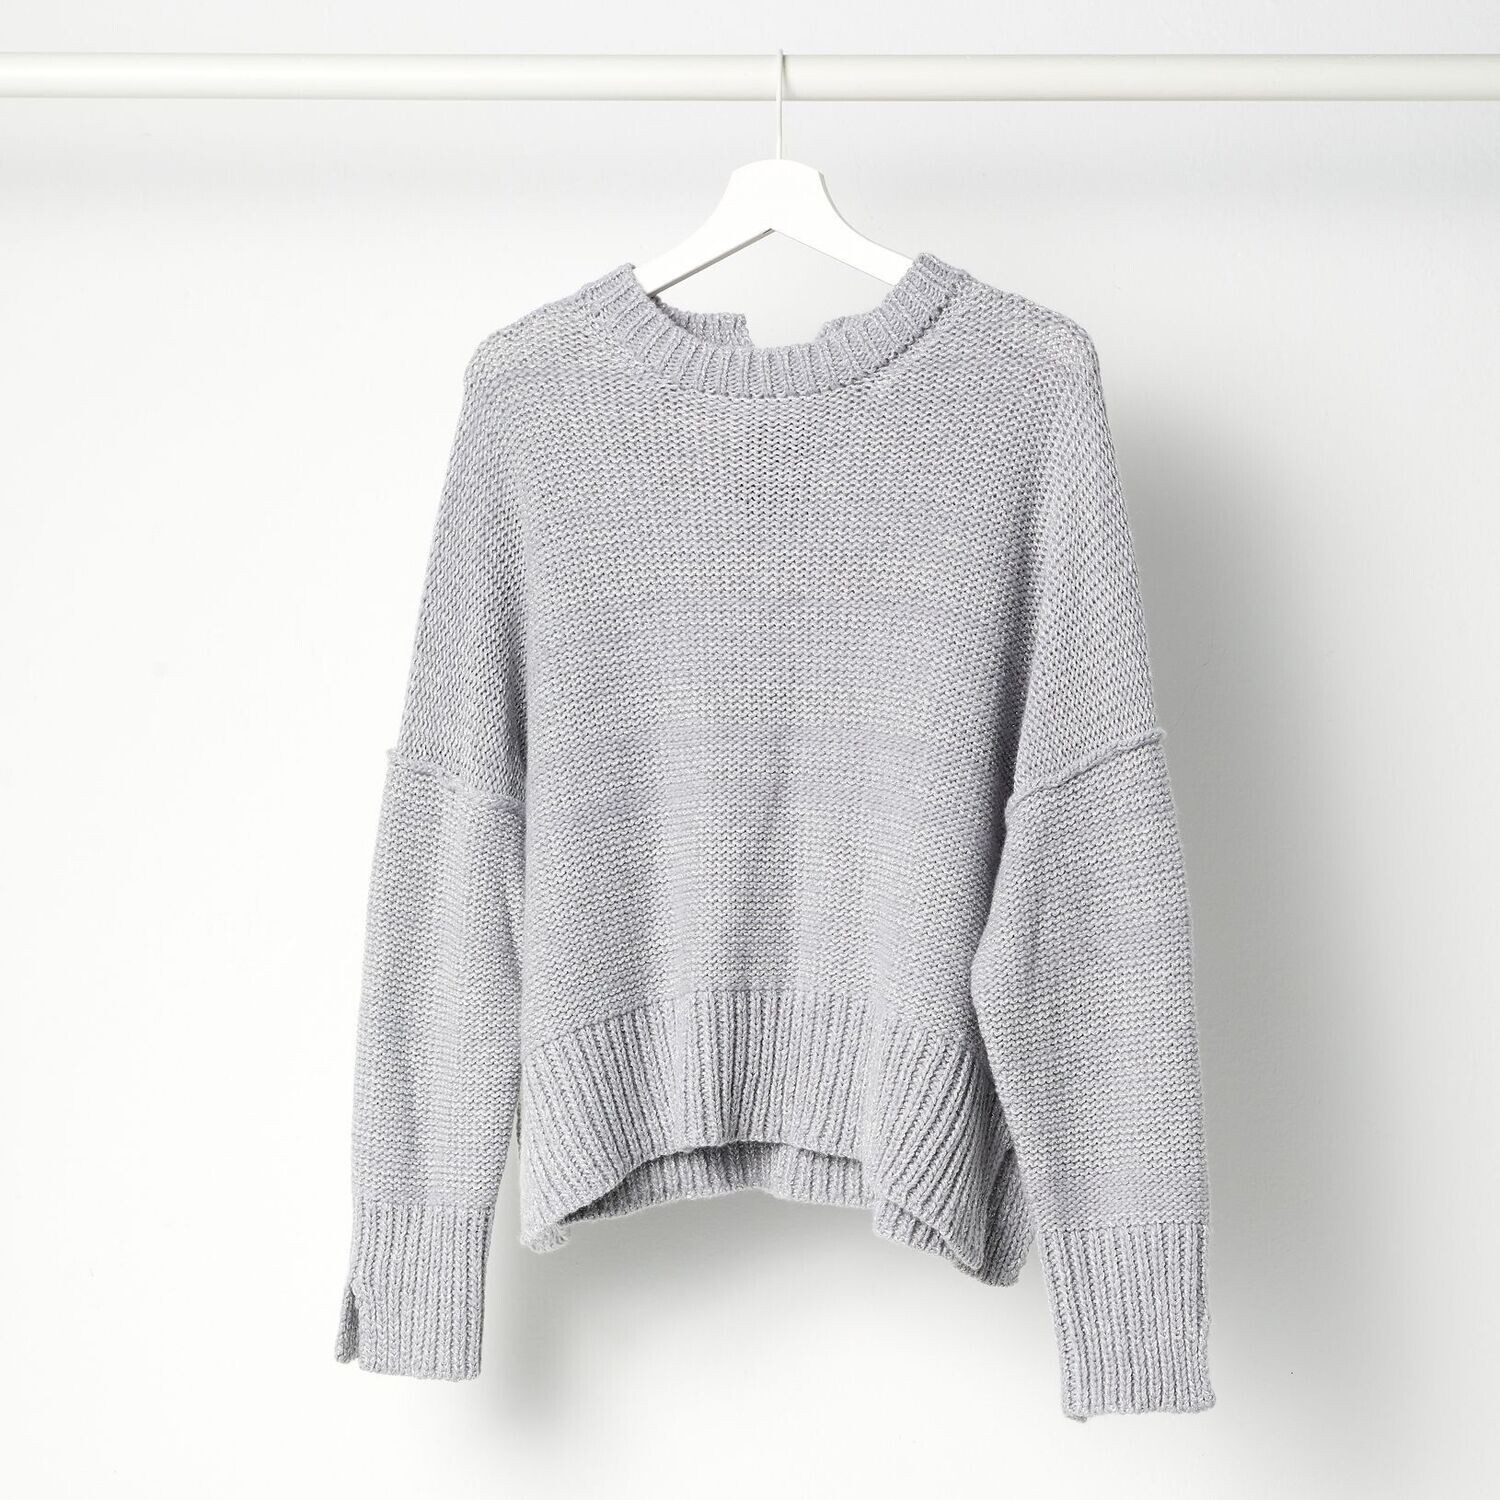 Cashmere-Sweater MOMO, Farbe: grey/Lurex, Größe: XS/S